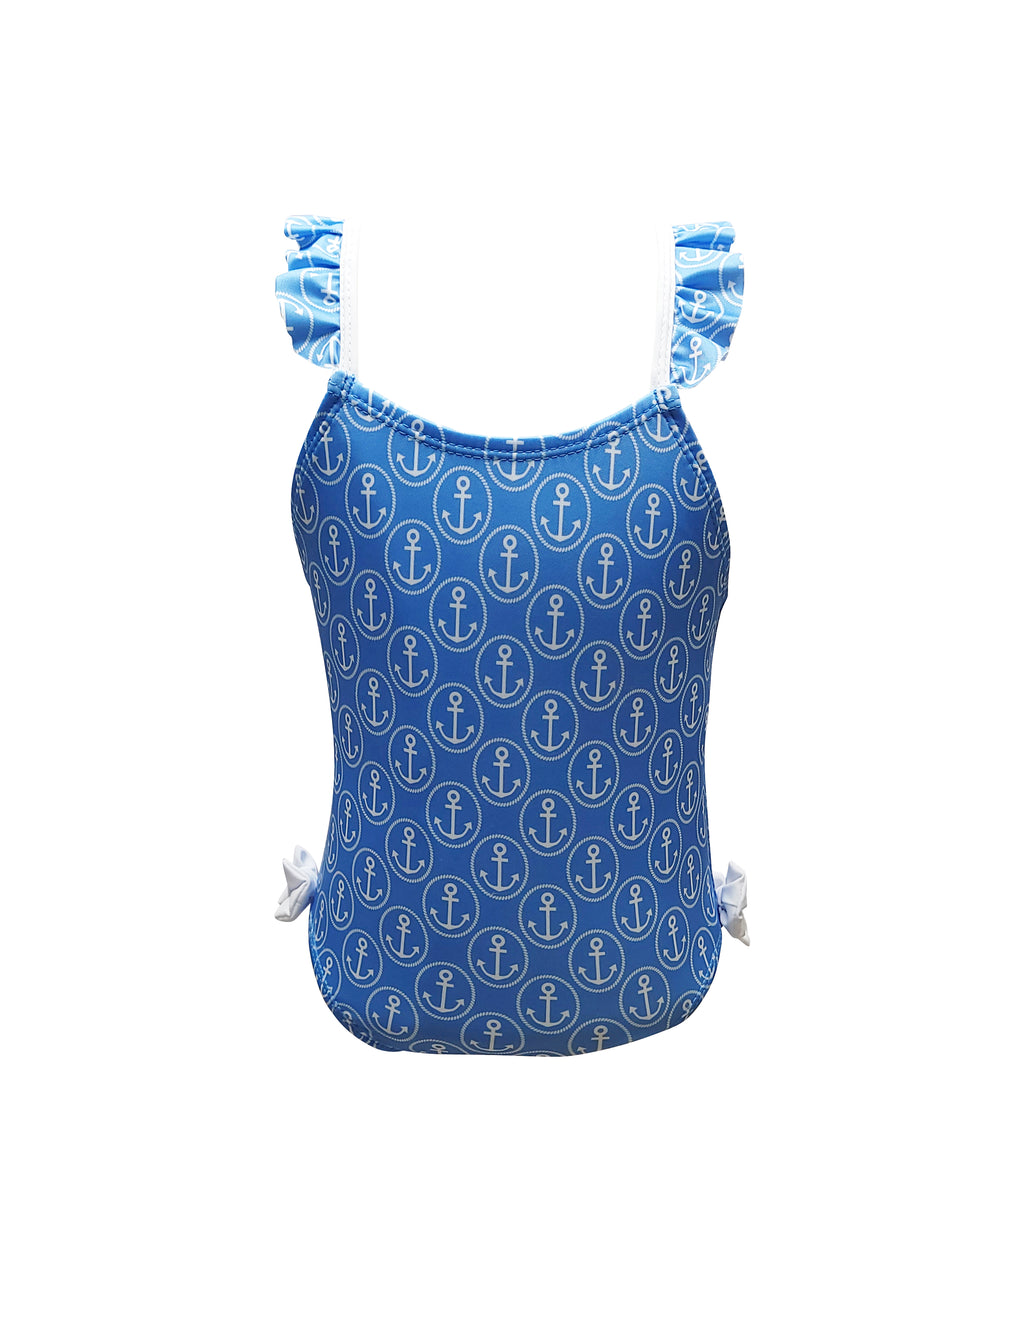 Girl's "Anchor" Print Swimsuit - Little Threads Inc. Children's Clothing